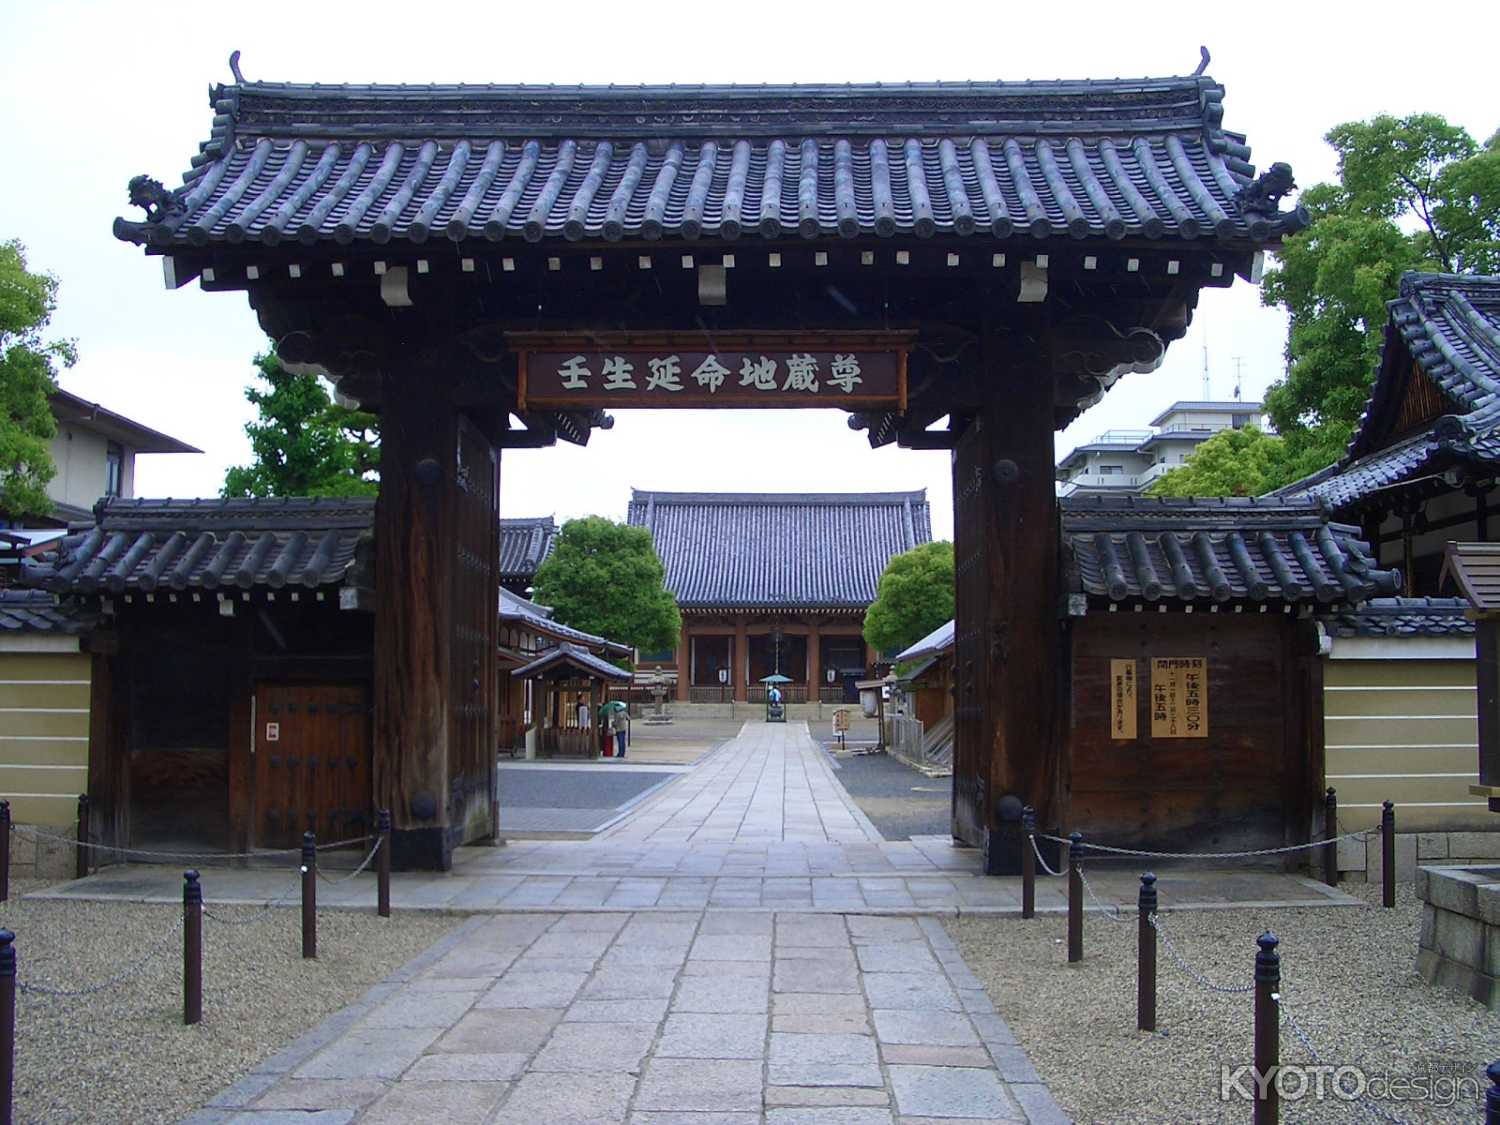 壬生寺の門と本堂